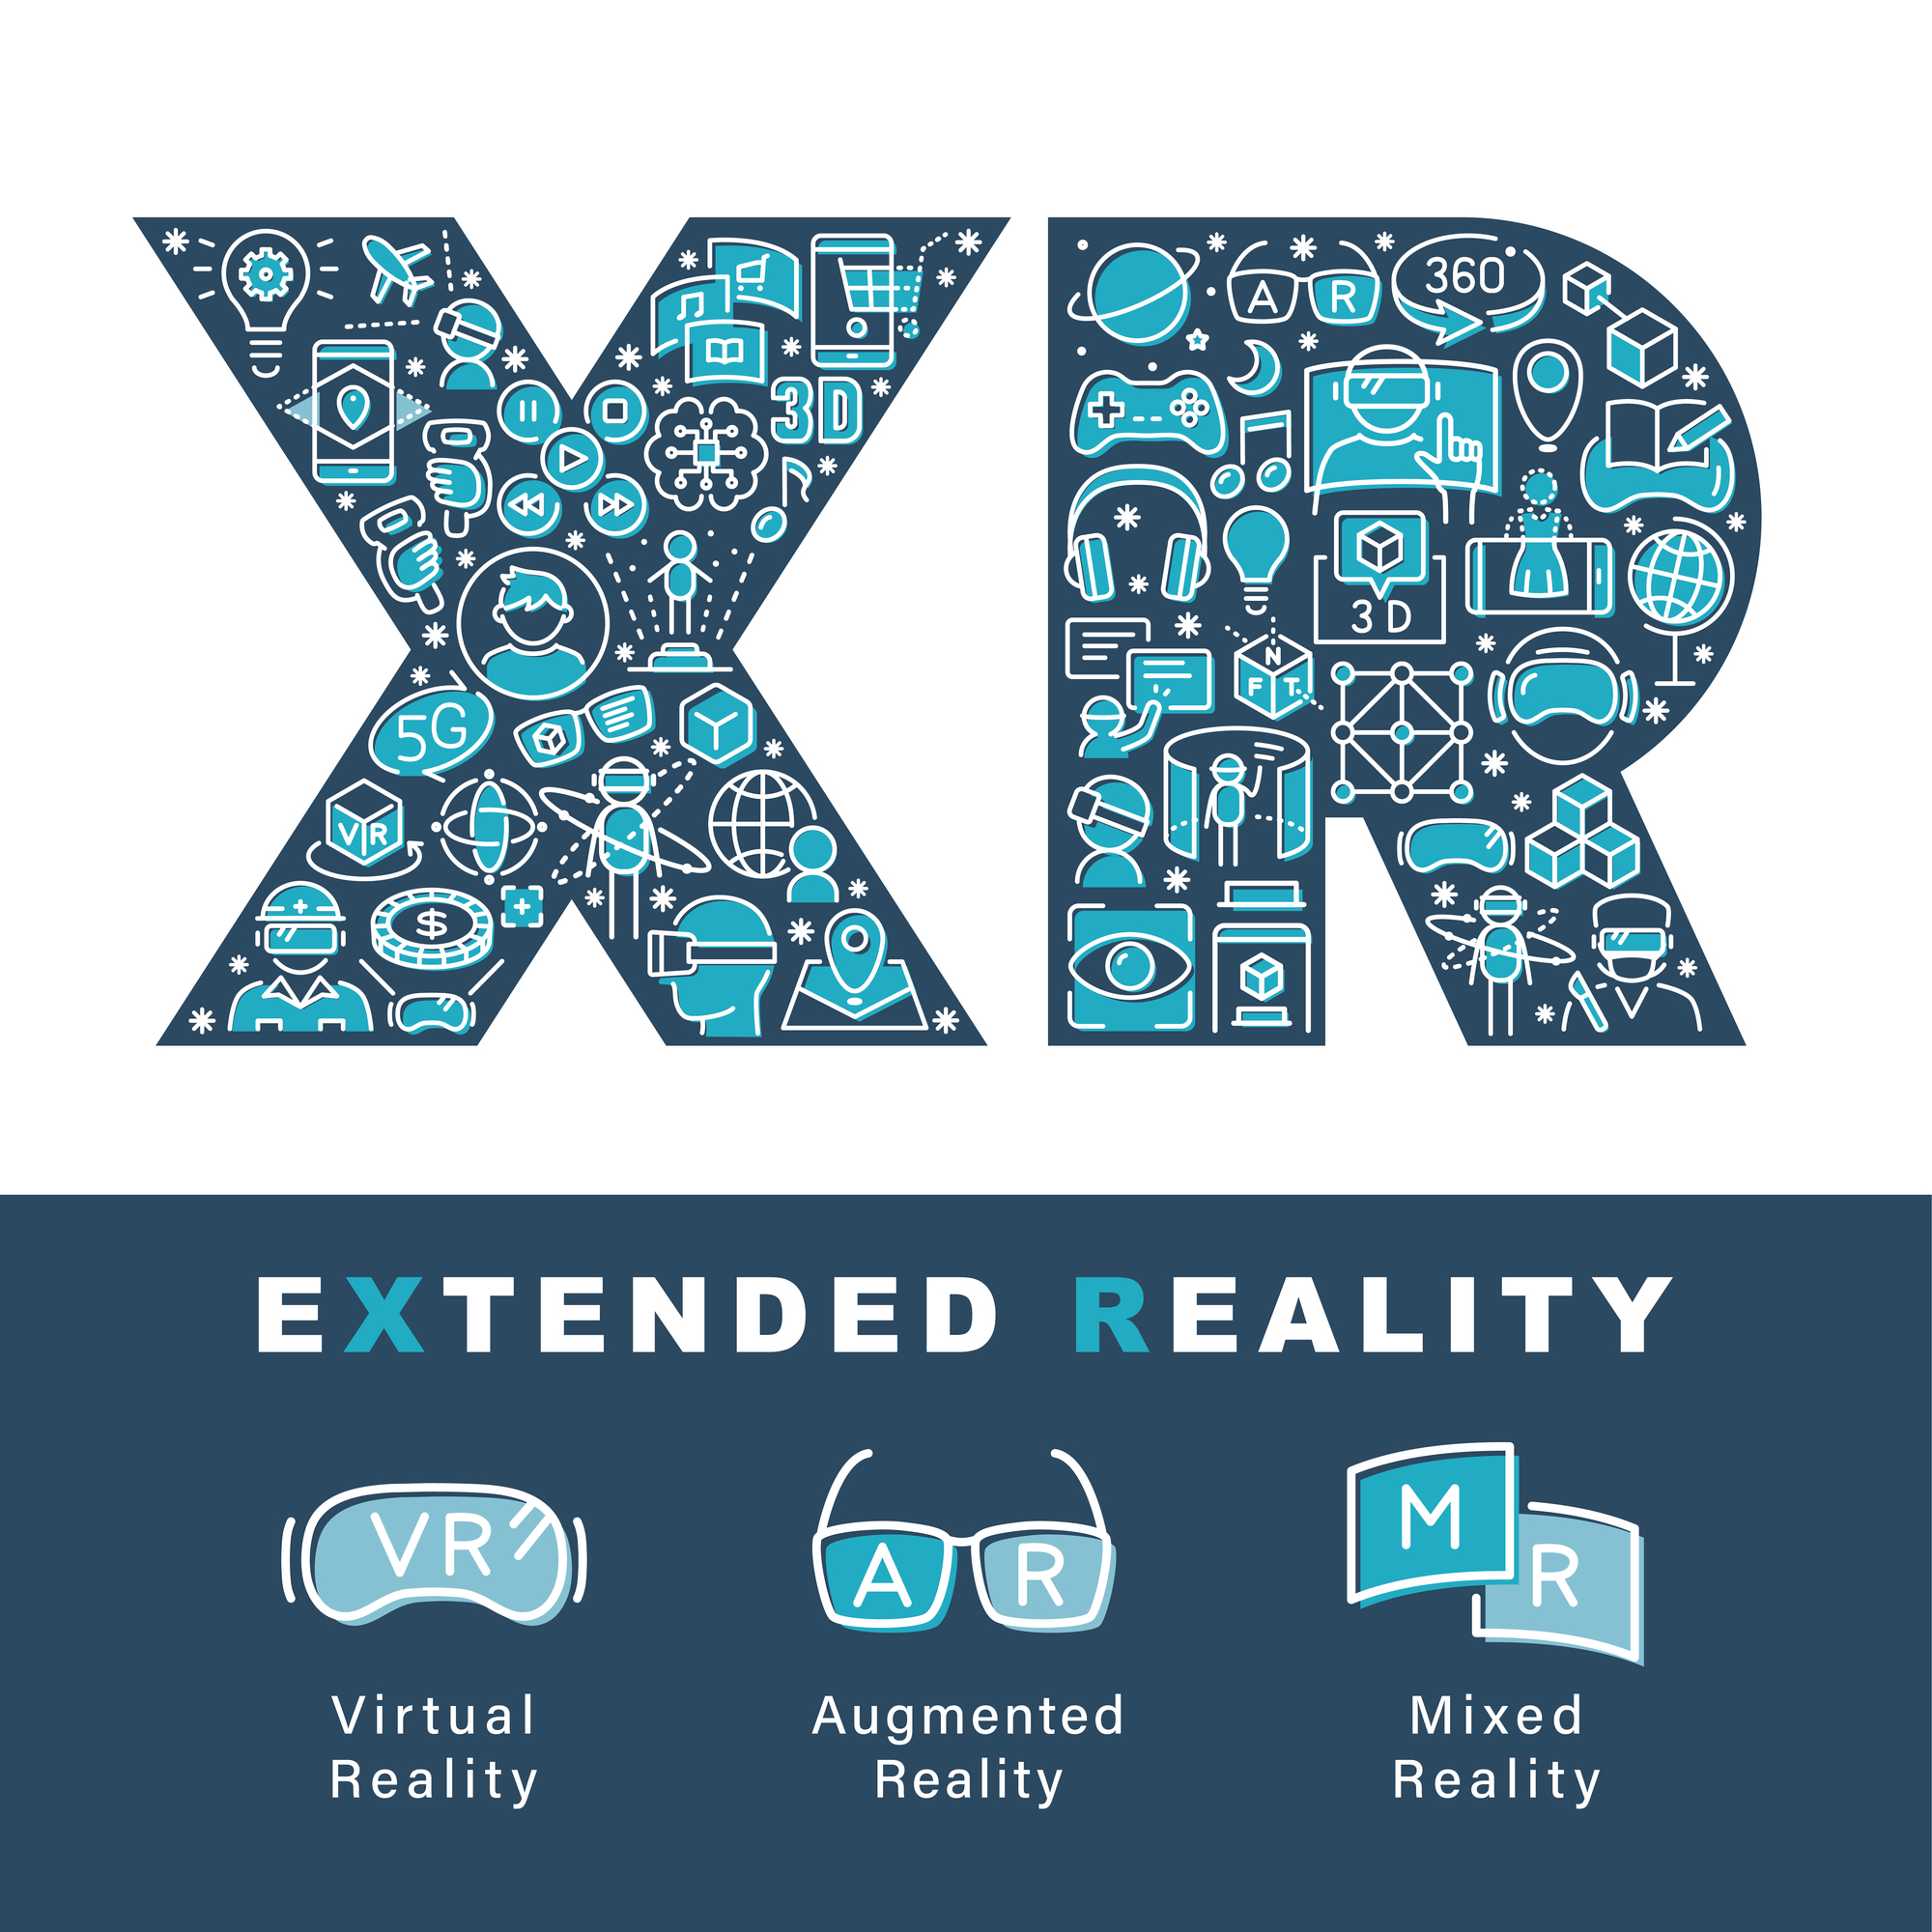 現実世界と仮想世界を融合するXR（クロスリアリティ）VR、メタバースとの違いとは